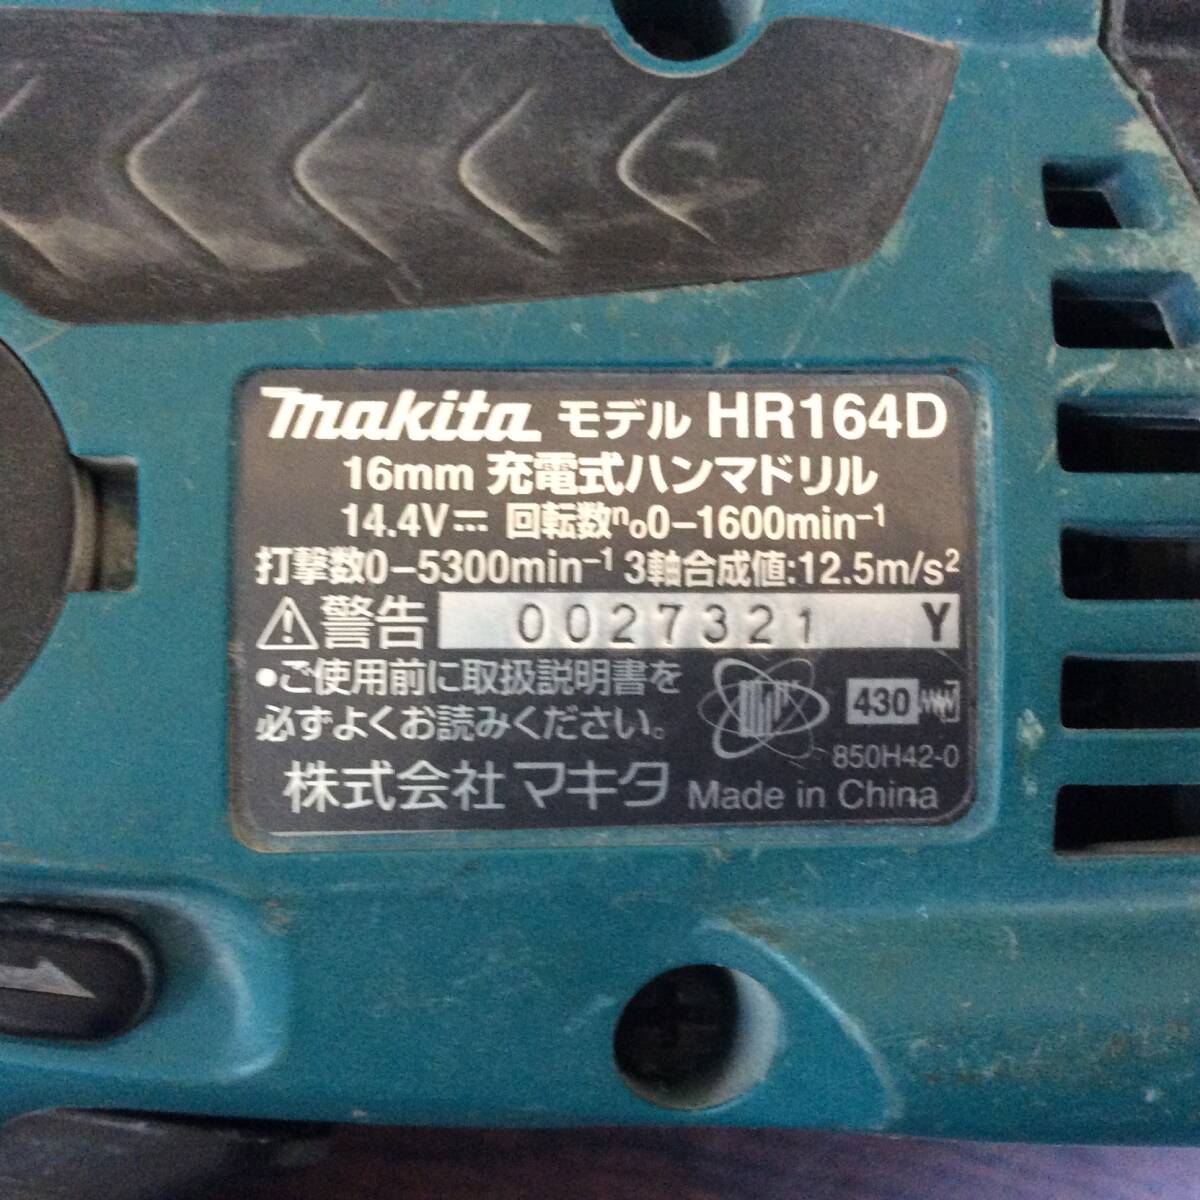 【MH-7227】中古品 makita マキタ HR164D 充電式ハンマドリル バッテリーBL1430 セット_画像5